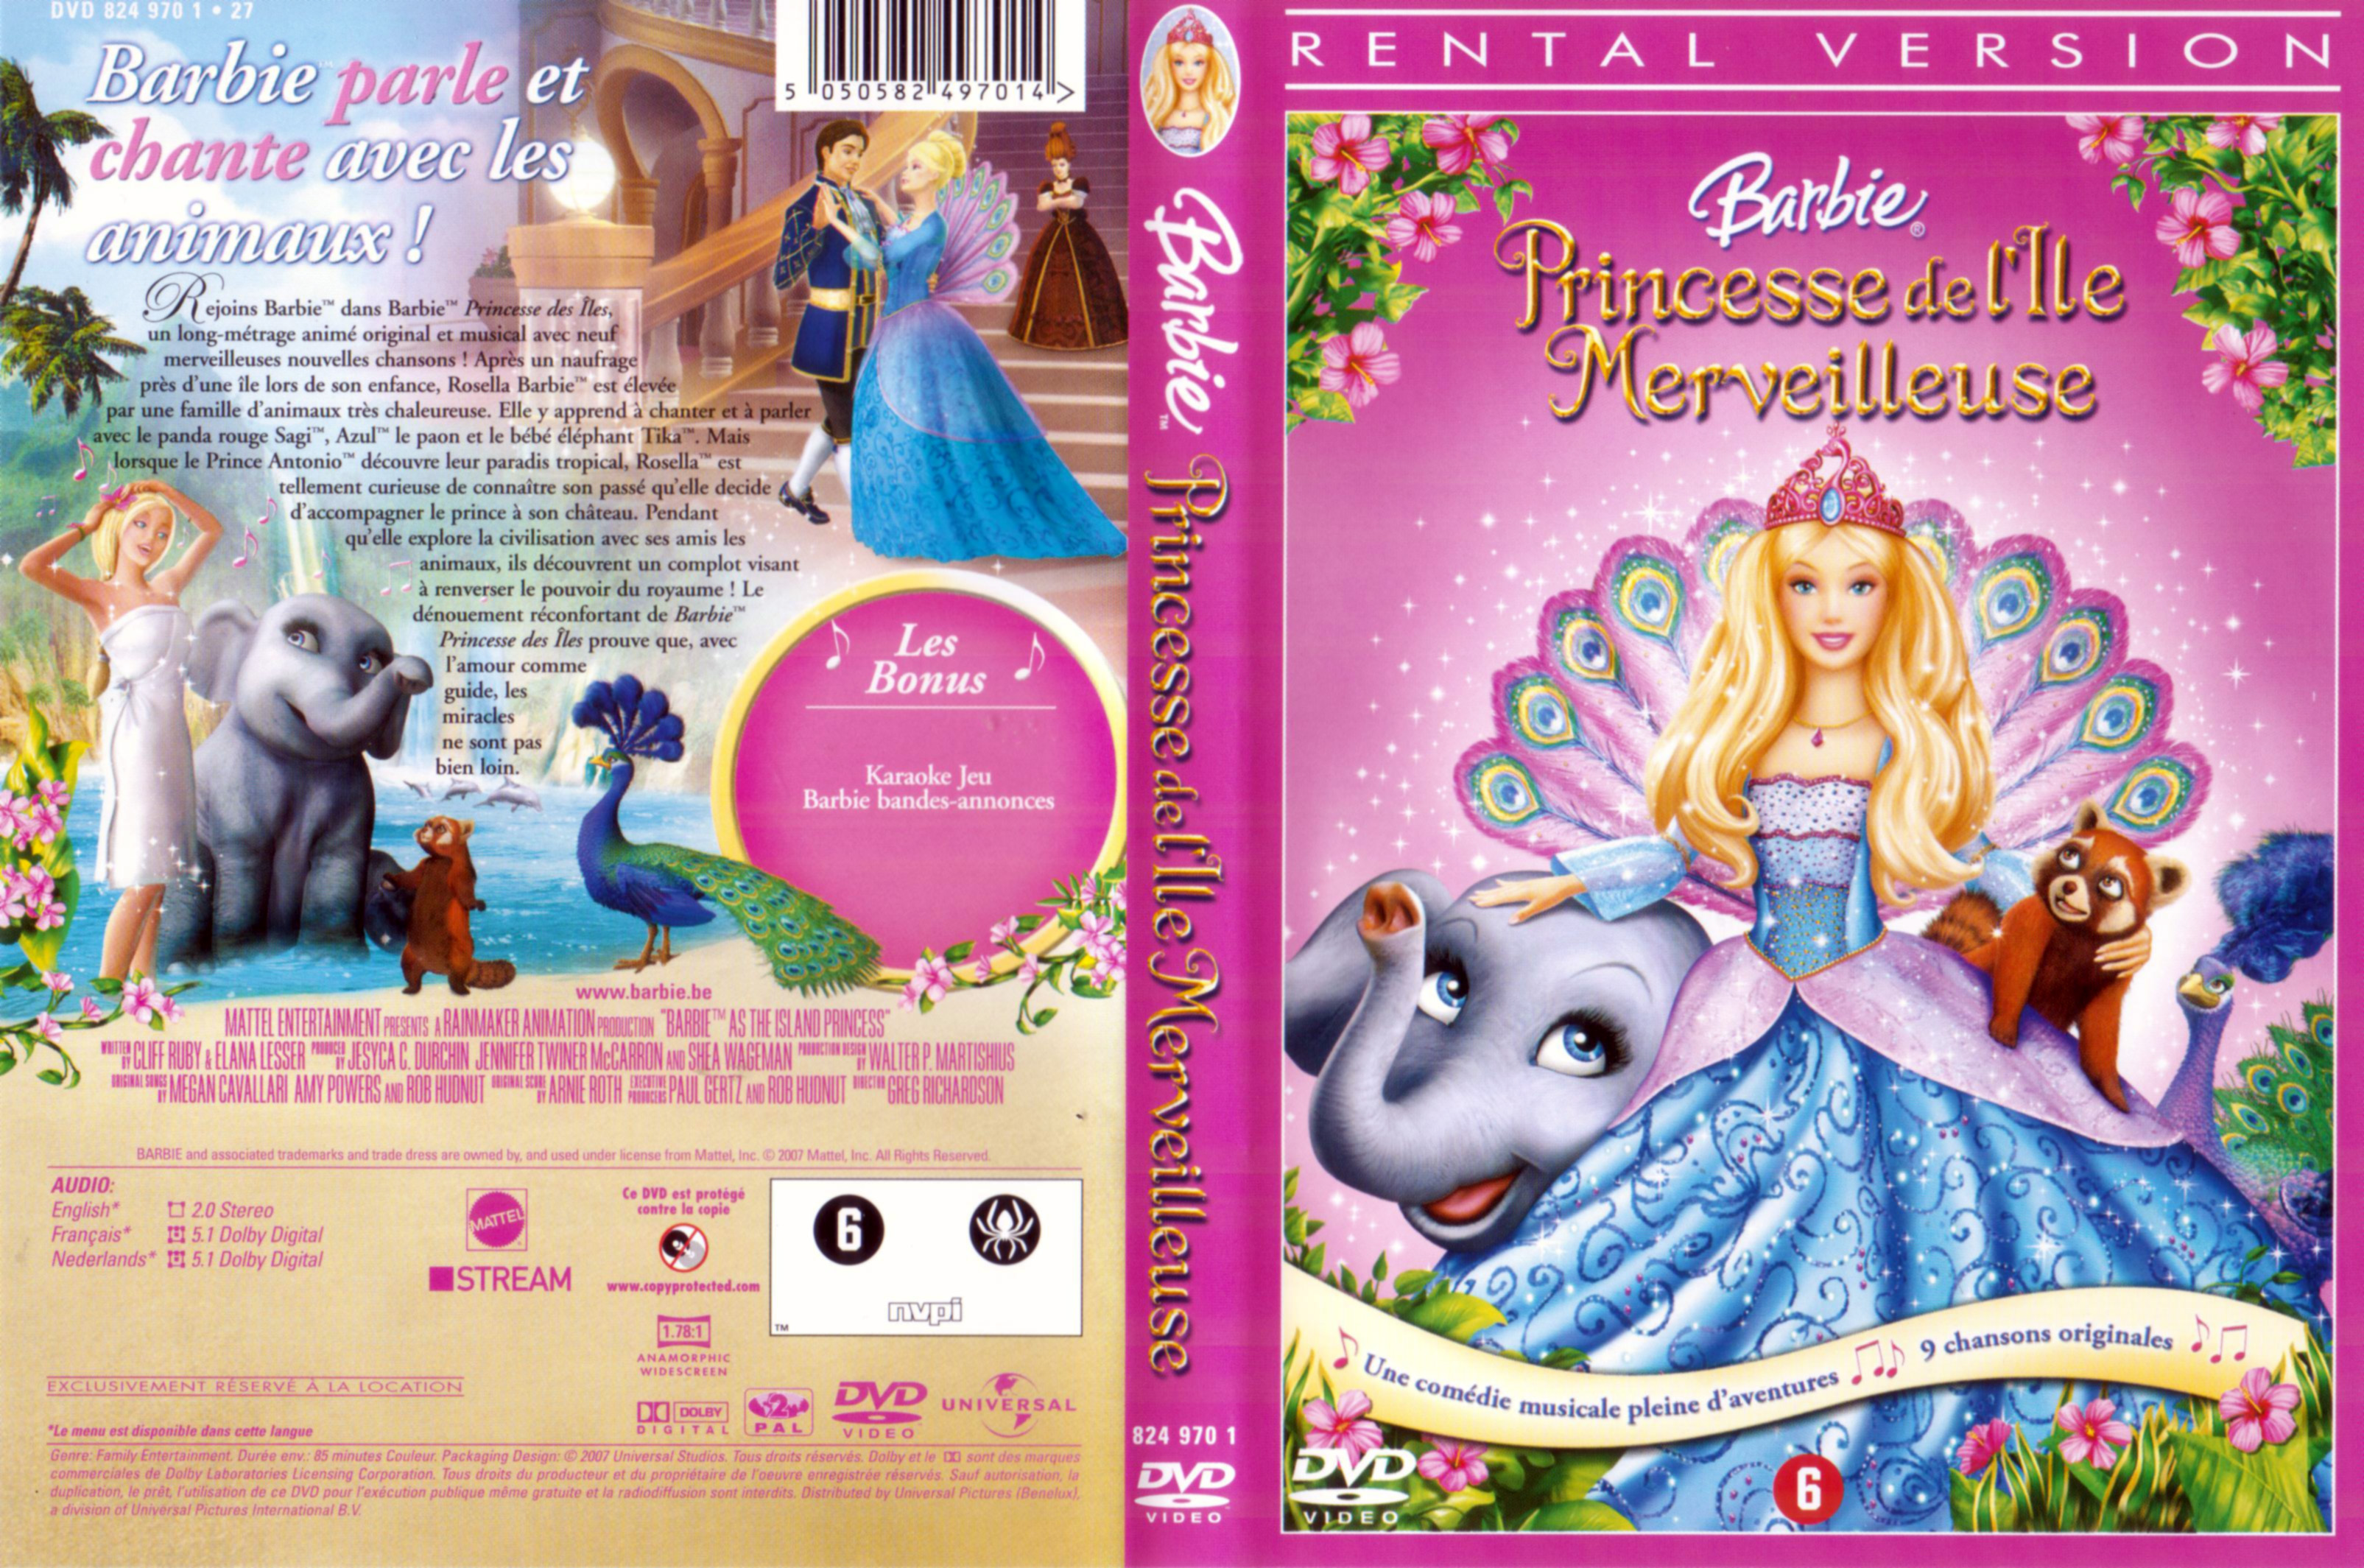 Jaquette DVD Barbie Princesse de l